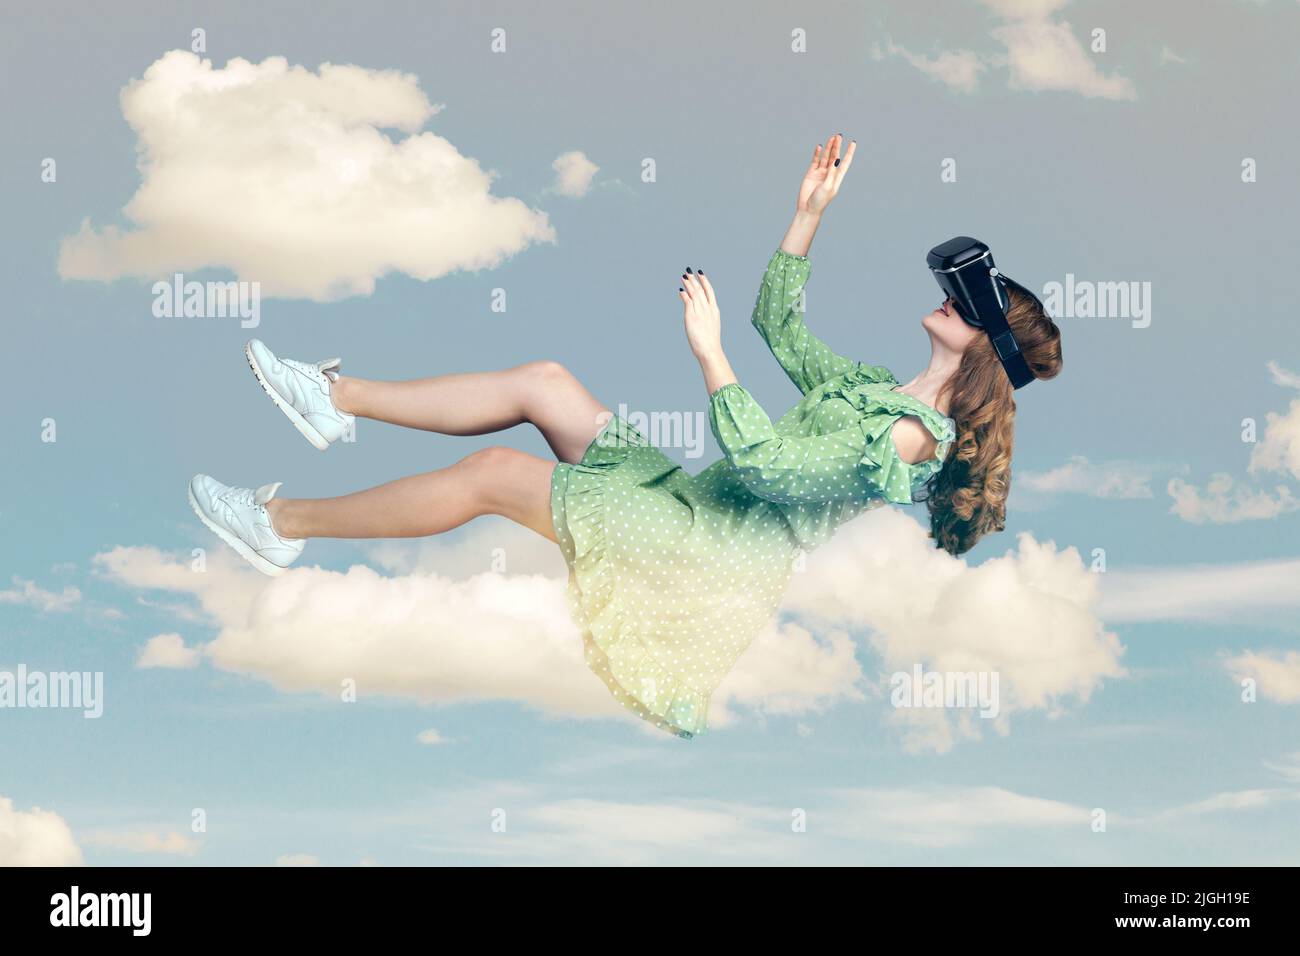 Gamer fille dans la robe planant dans l'air, lévitant avec des lunettes de réalité virtuelle sur la tête, jouant au jeu par le casque vr, flottant dans le cyberespace dans le ciel. Composition de collage le jour ciel bleu ciel nuageux Banque D'Images